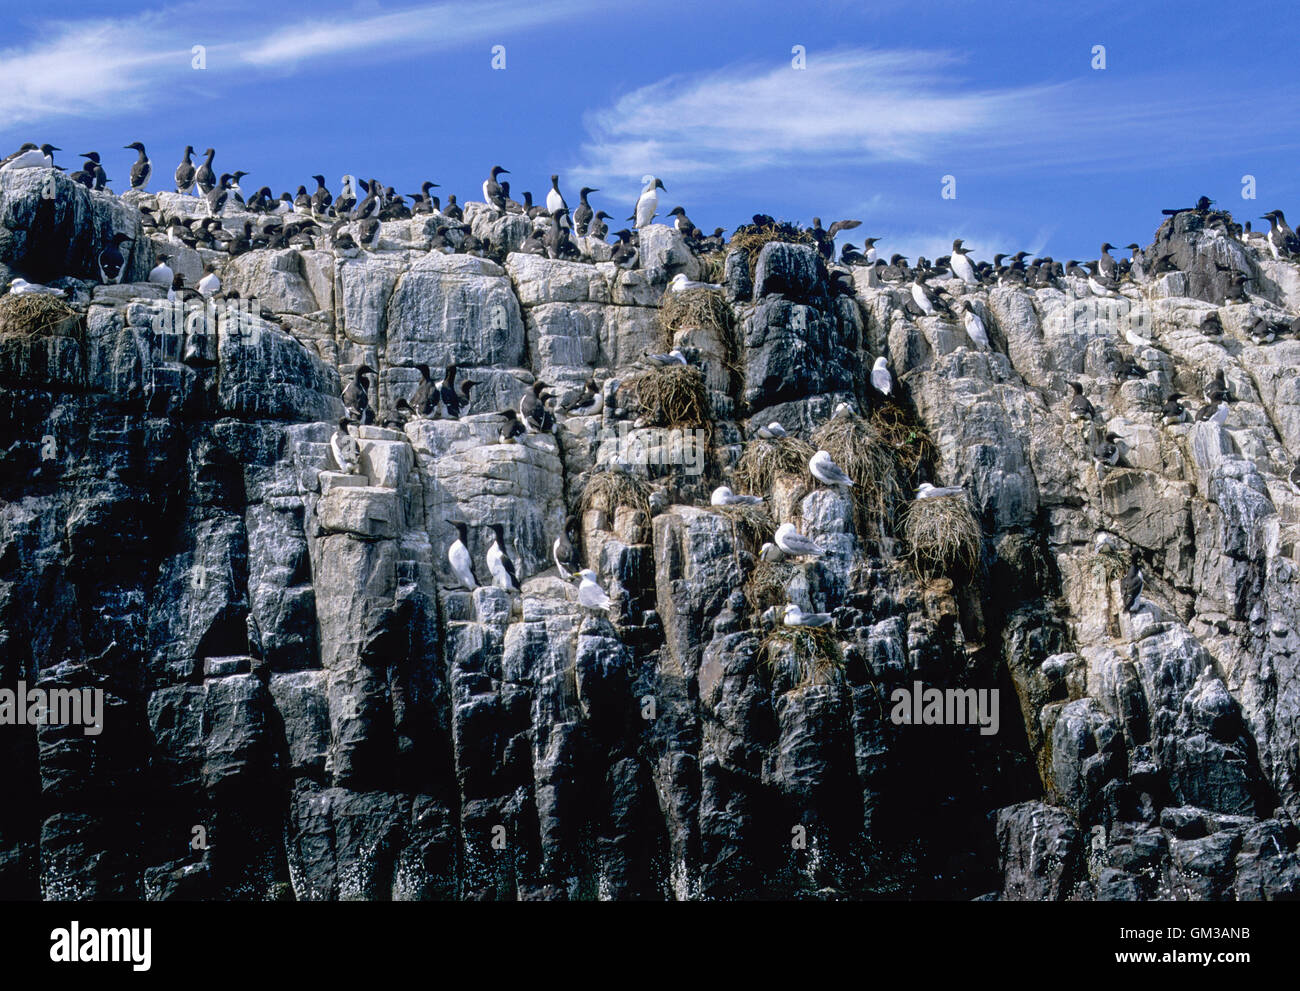 Guillemot, (Uria aalge) y Kittiwake (Rissa tridactyla), Cliff colonia de anidación, Islas Farne, Northumberland, Islas Británicas Foto de stock